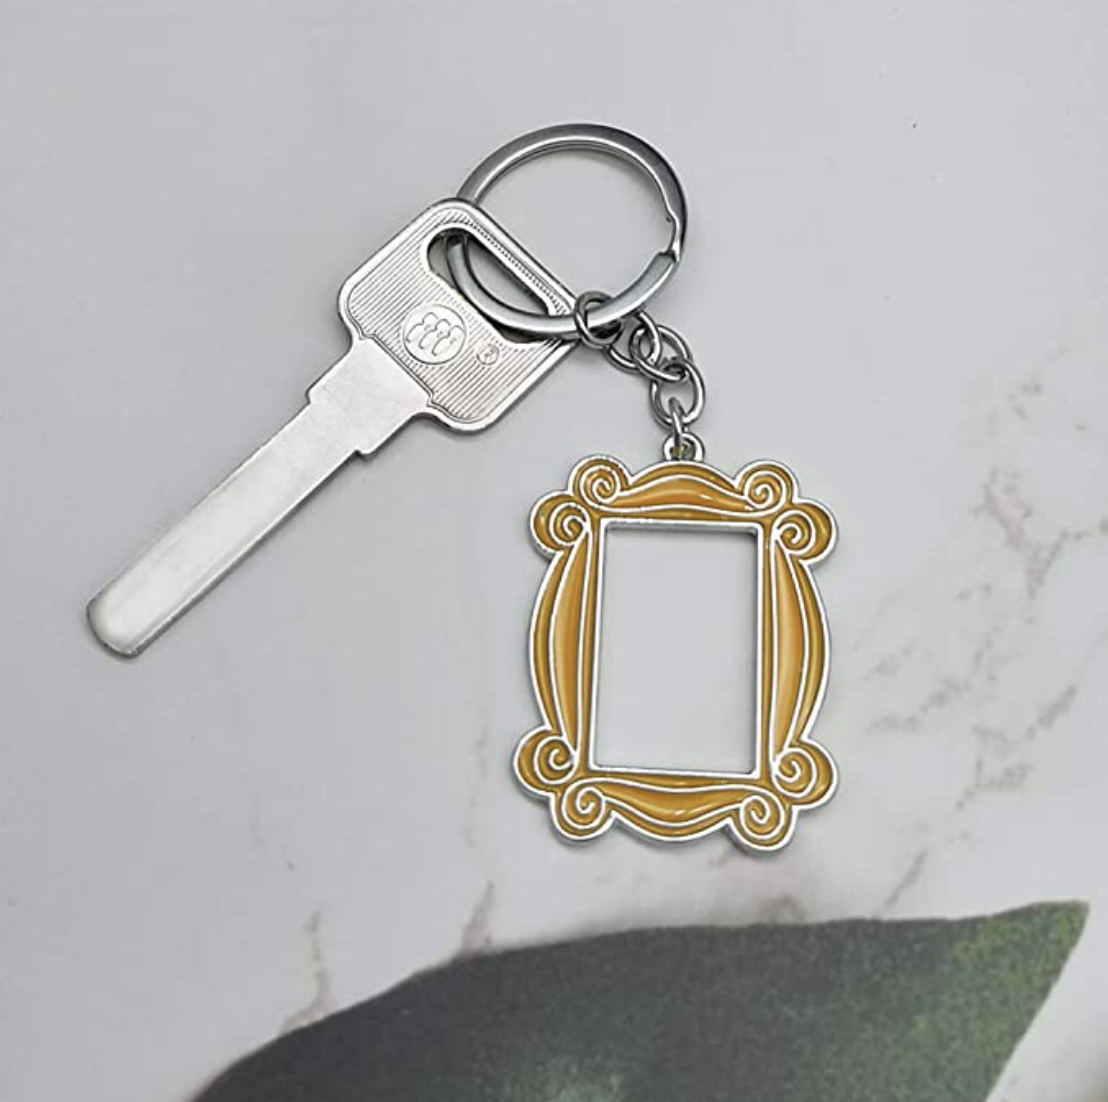 peephole frame keychain with a key